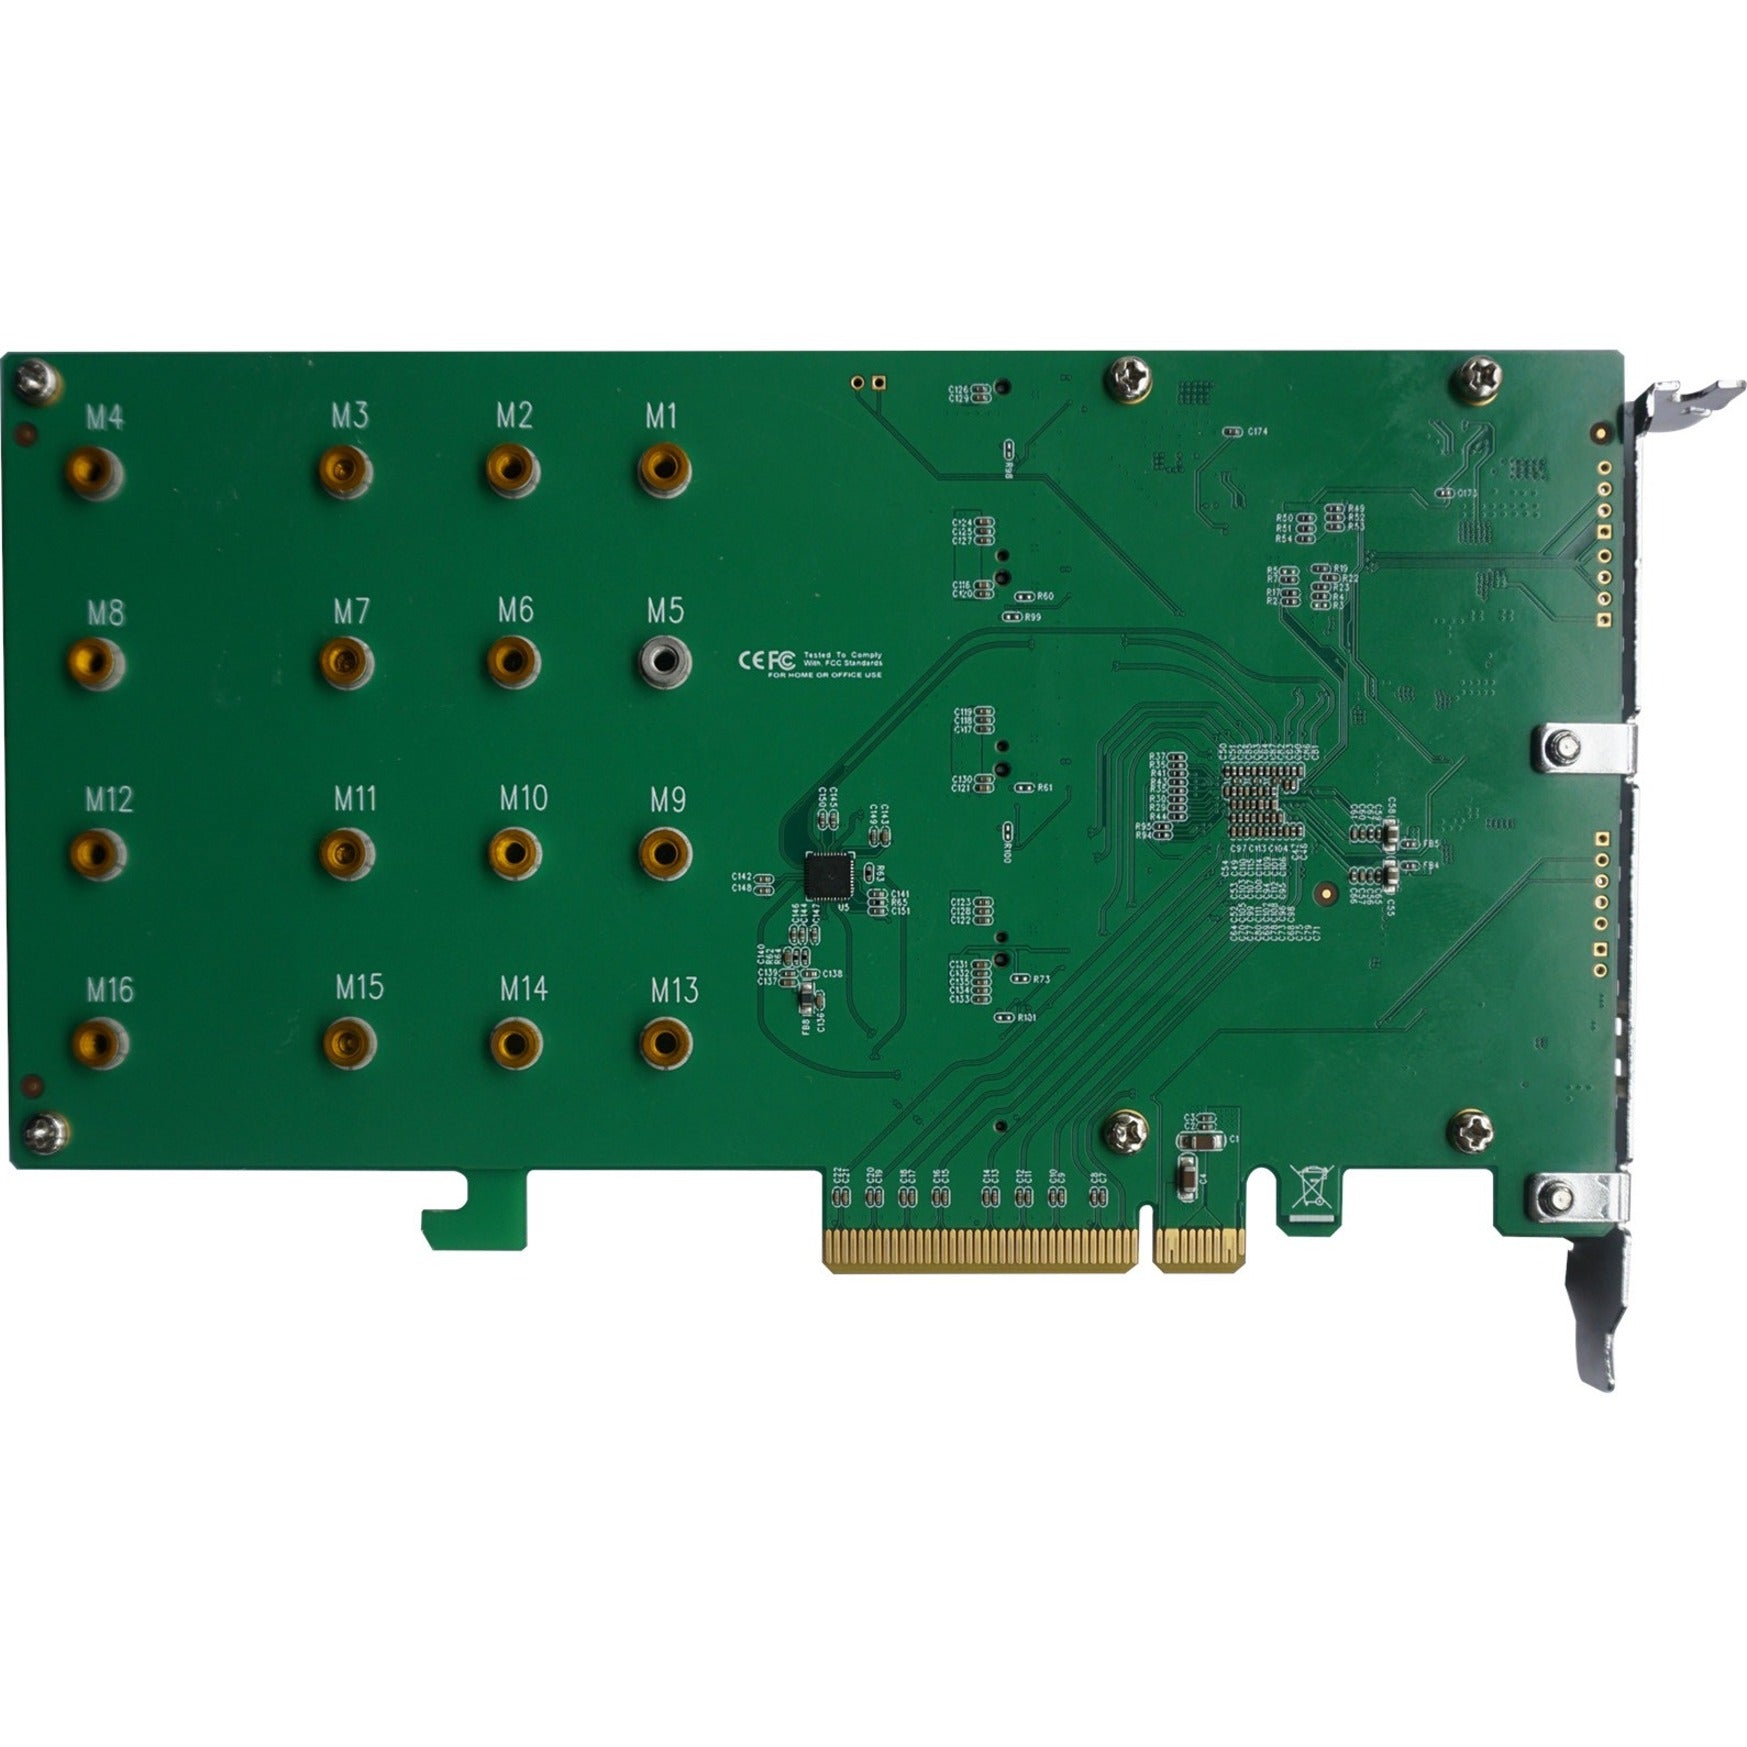 HighPoint SSD6204 NVMe Controller, PCIe 3.0 x8 RAID, 4 M.2 Interfaces